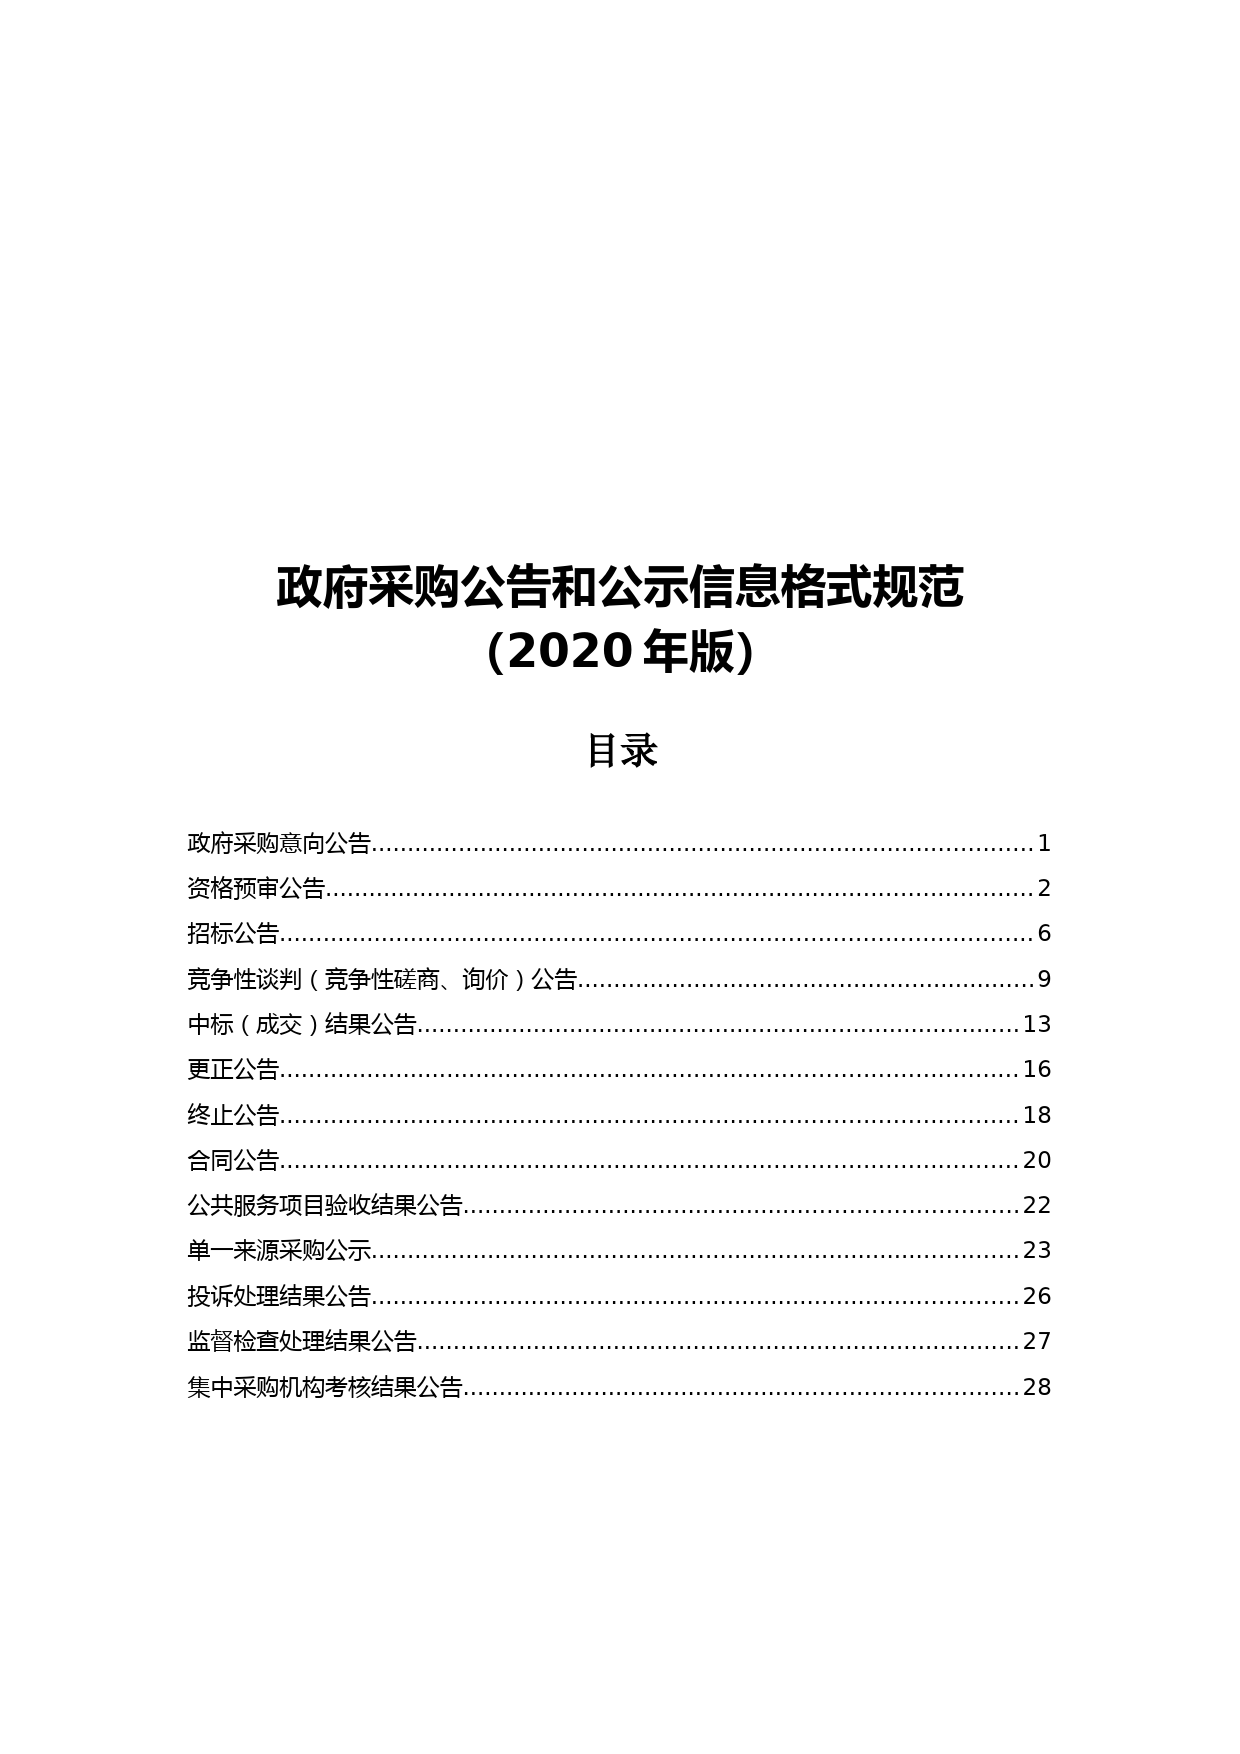 政府采购公告和公示信息格式规范(2020年版)